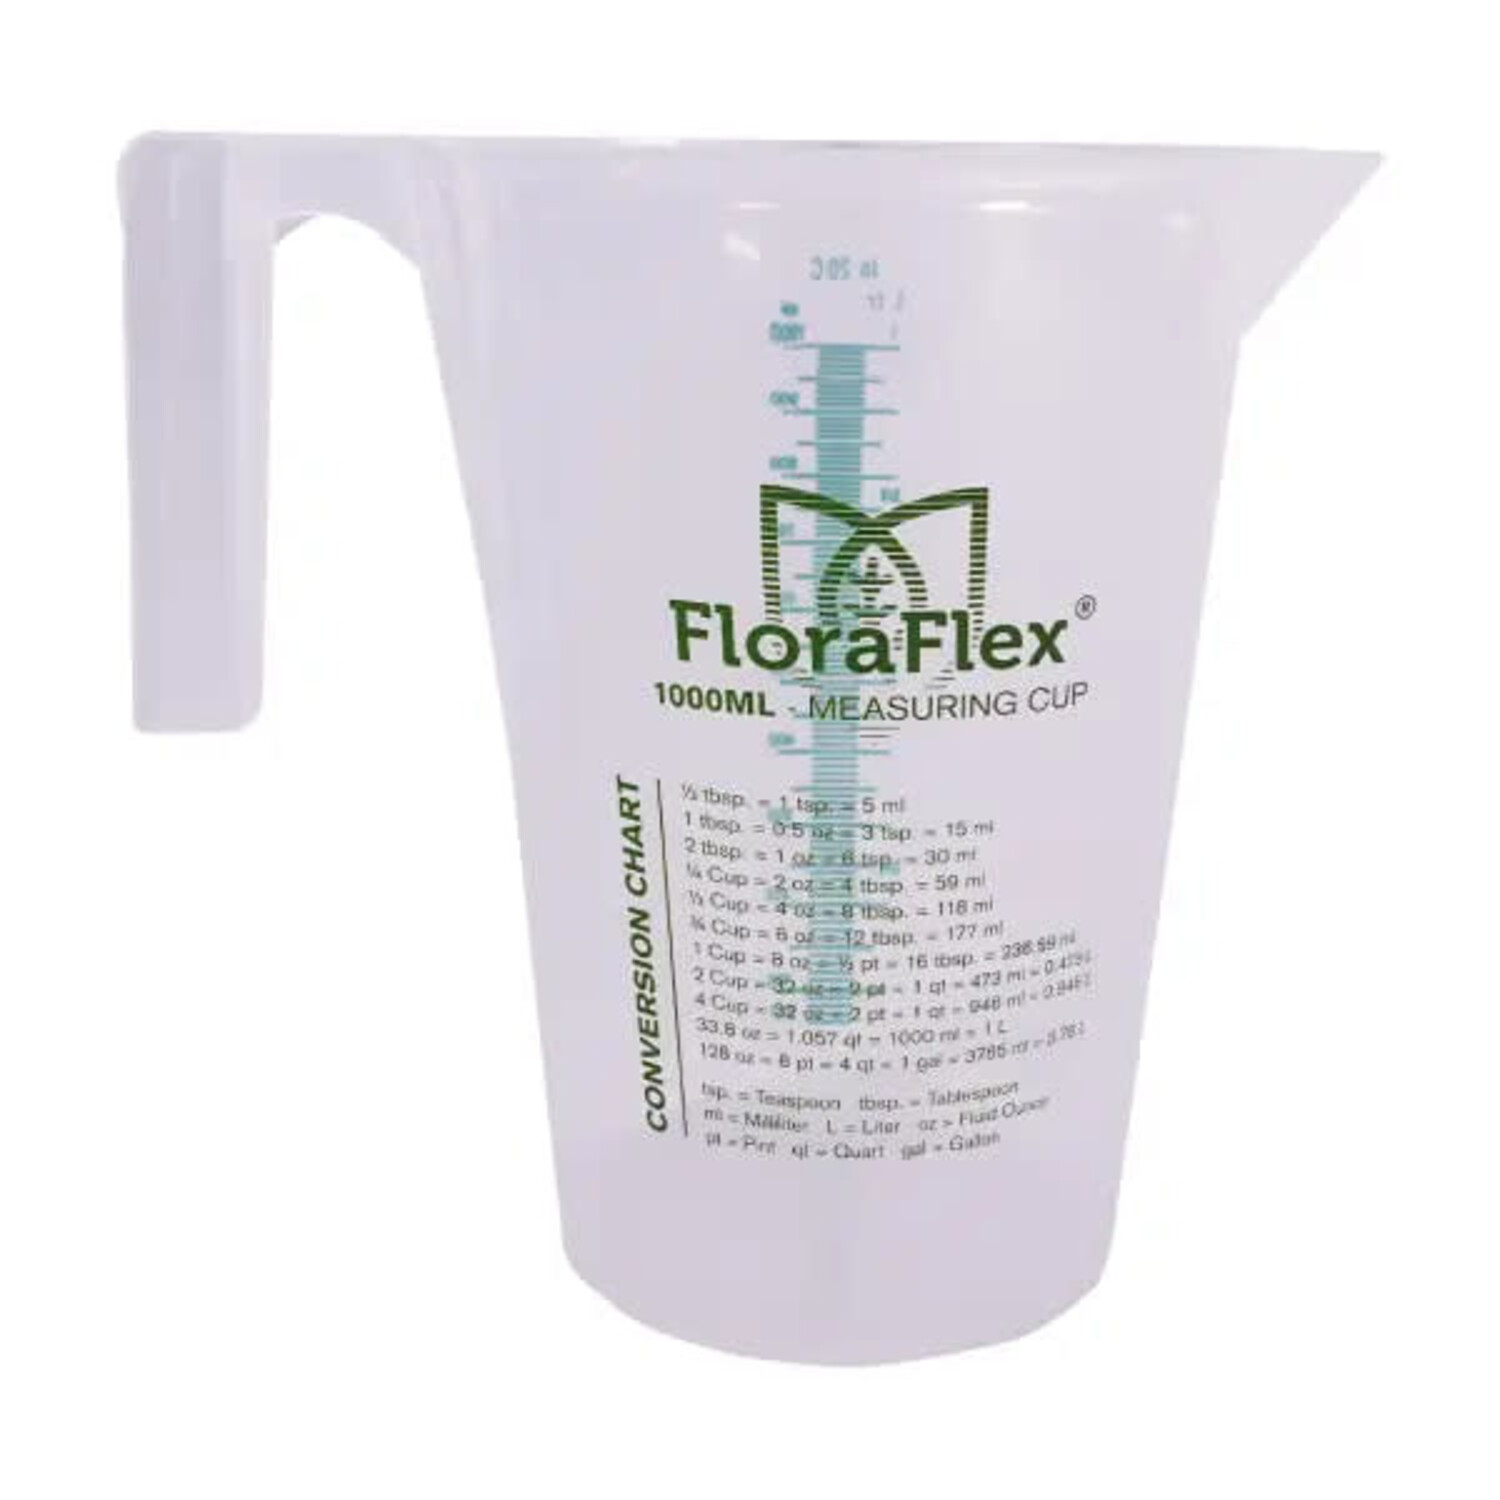 FloraFlex FloraFlex Measuring Cup (1000ml)